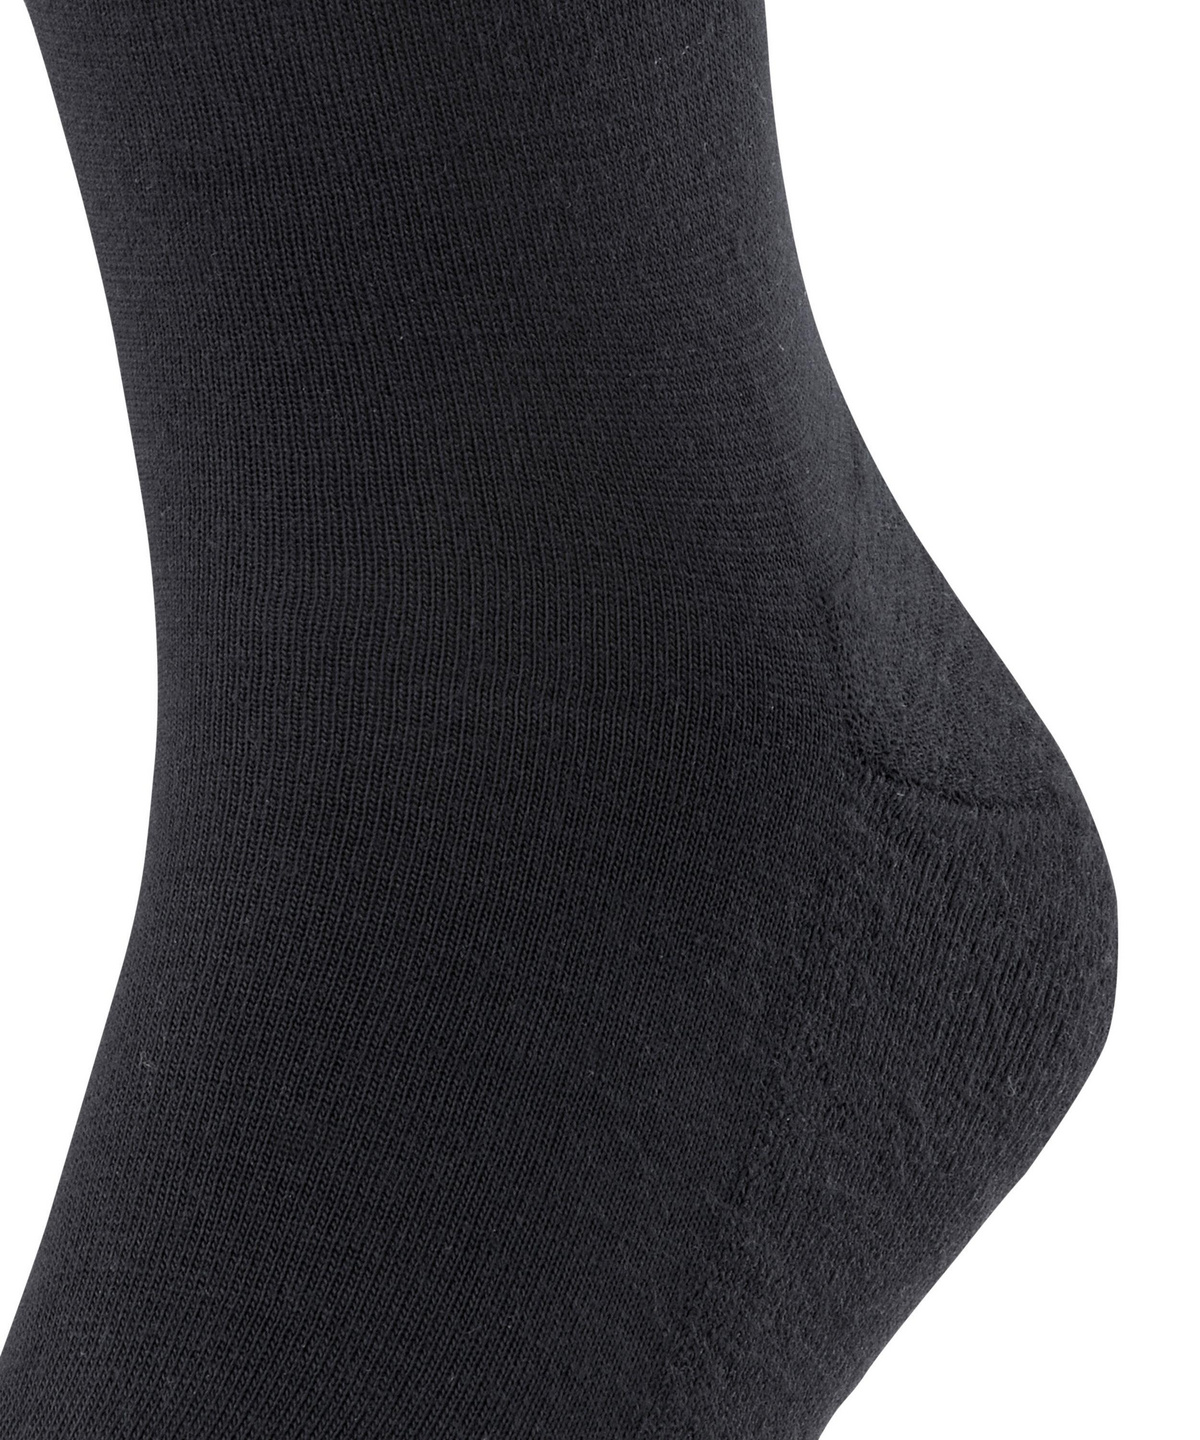 modvirke Microbe Sædvanlig Short Socks Airport Plus (Black) | FALKE